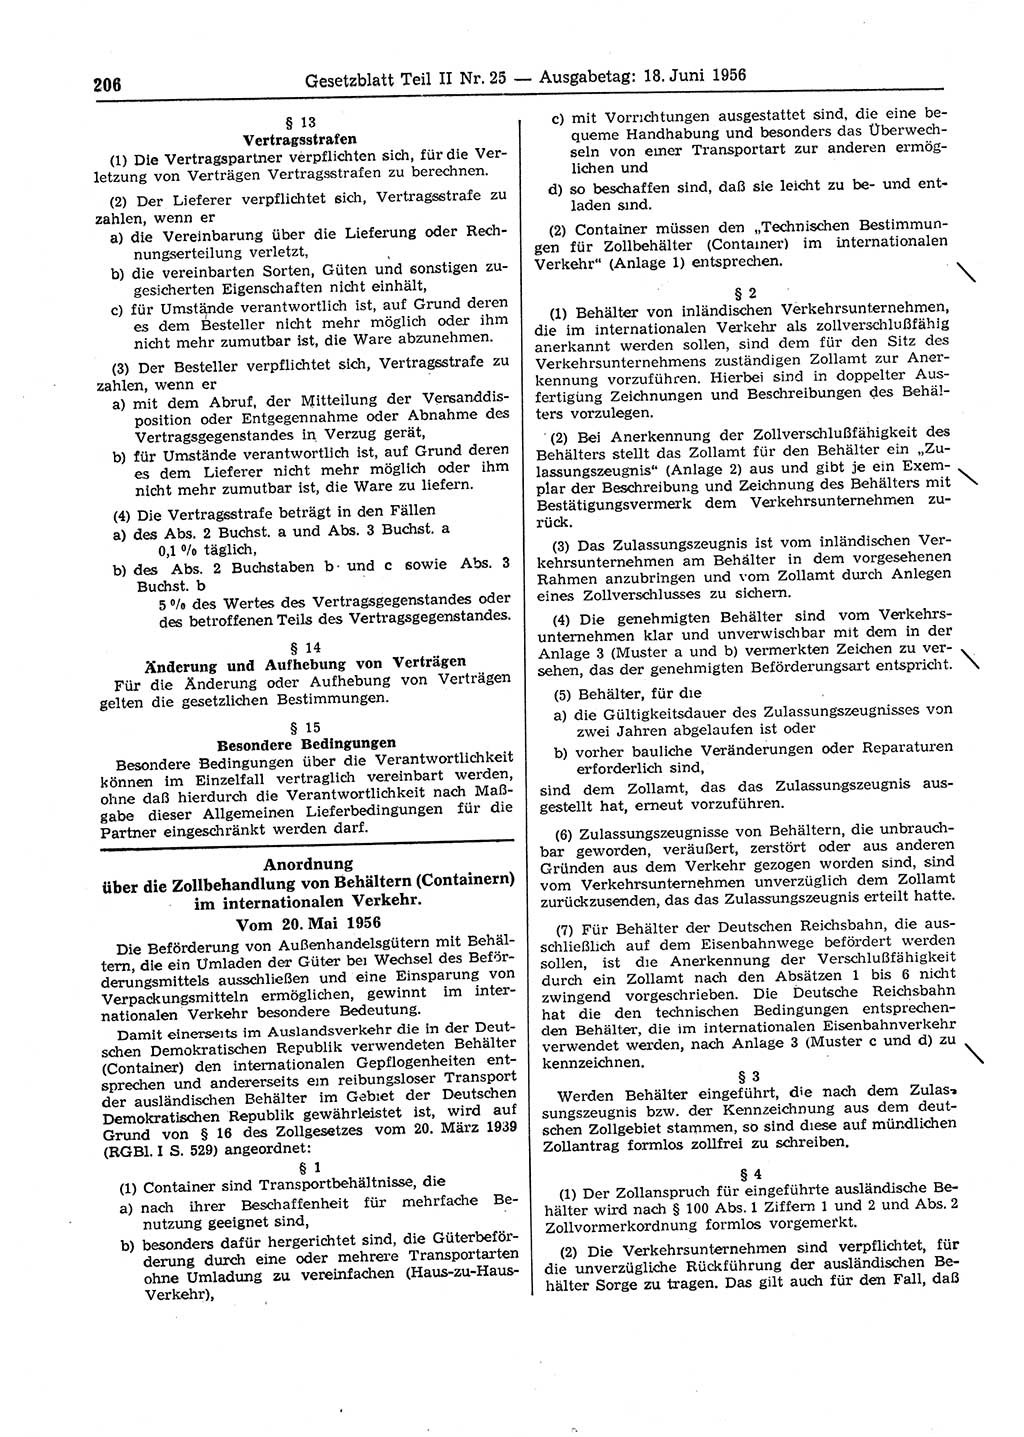 Gesetzblatt (GBl.) der Deutschen Demokratischen Republik (DDR) Teil ⅠⅠ 1956, Seite 206 (GBl. DDR ⅠⅠ 1956, S. 206)